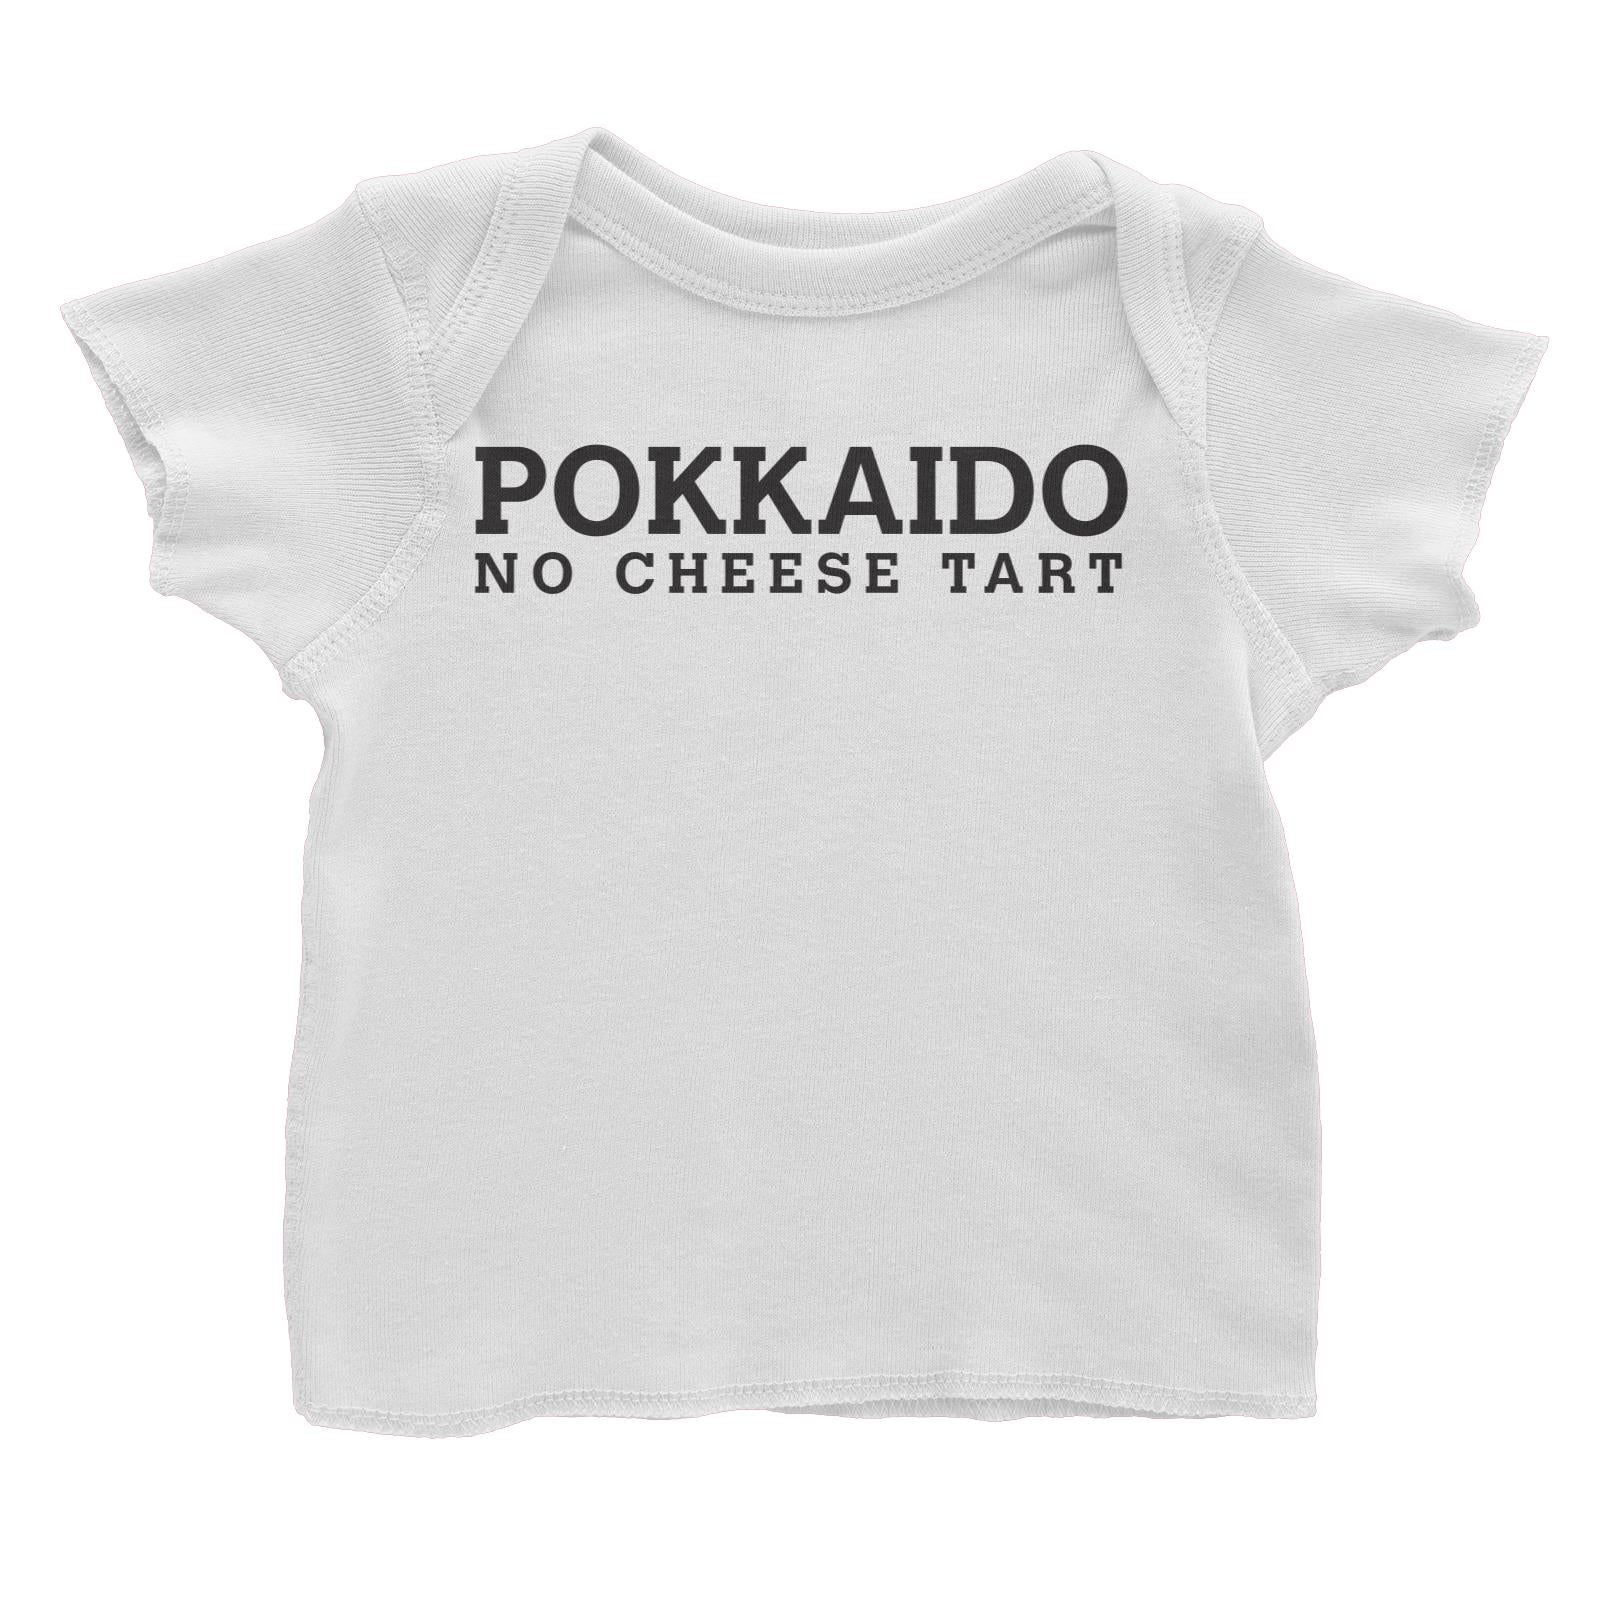 Slang Statement Pokkaido No Cheese Tart Baby T-Shirt